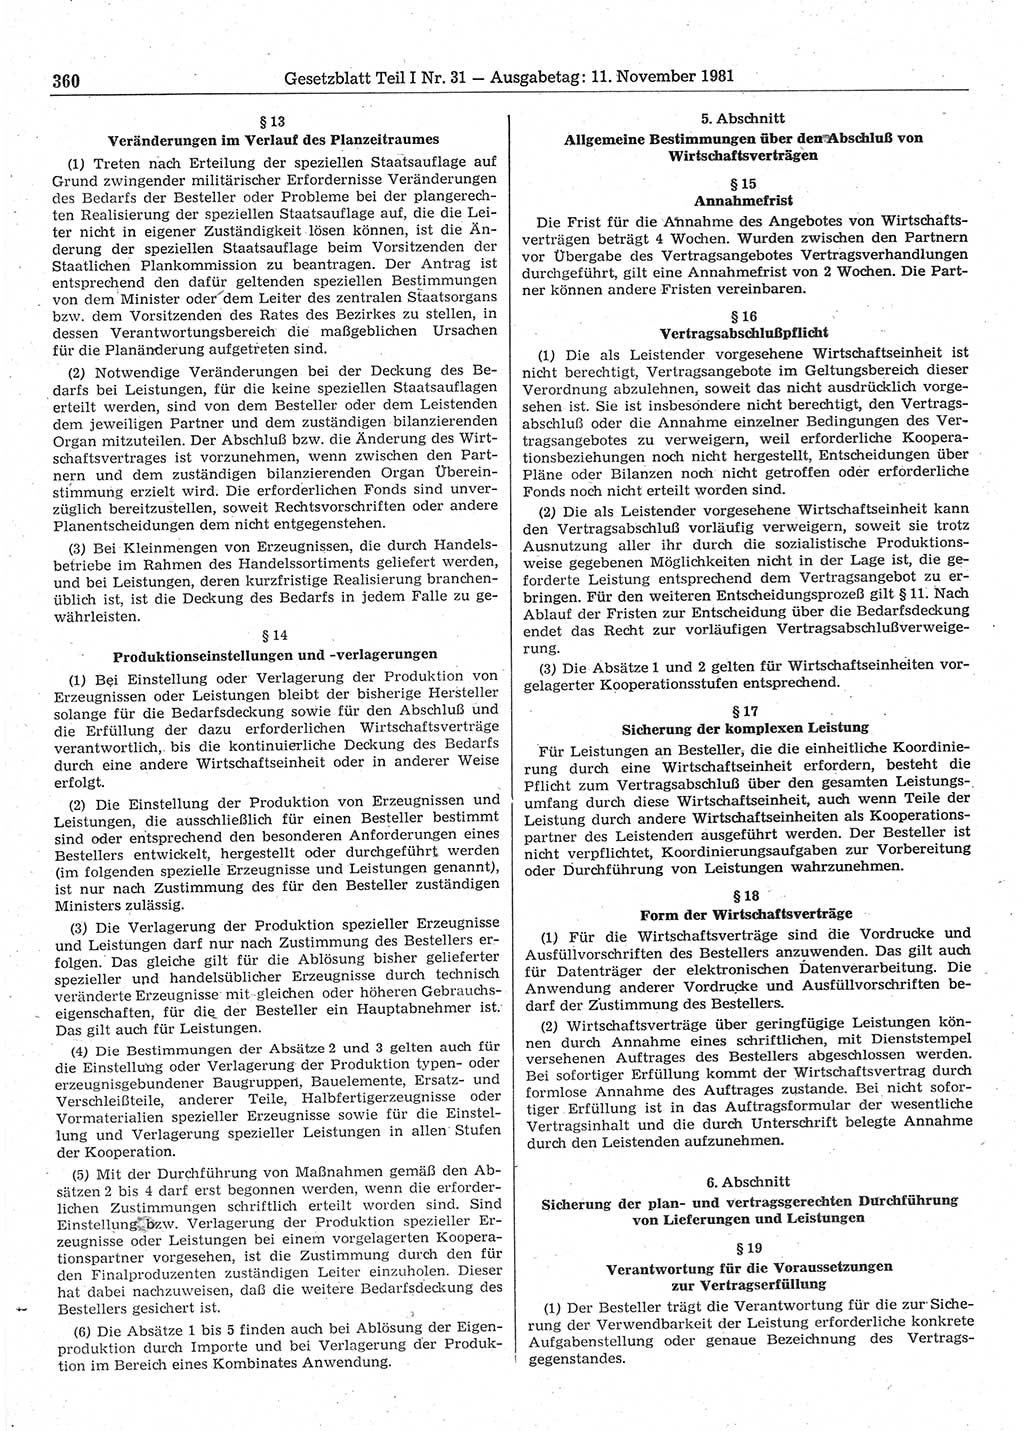 Gesetzblatt (GBl.) der Deutschen Demokratischen Republik (DDR) Teil Ⅰ 1981, Seite 360 (GBl. DDR Ⅰ 1981, S. 360)